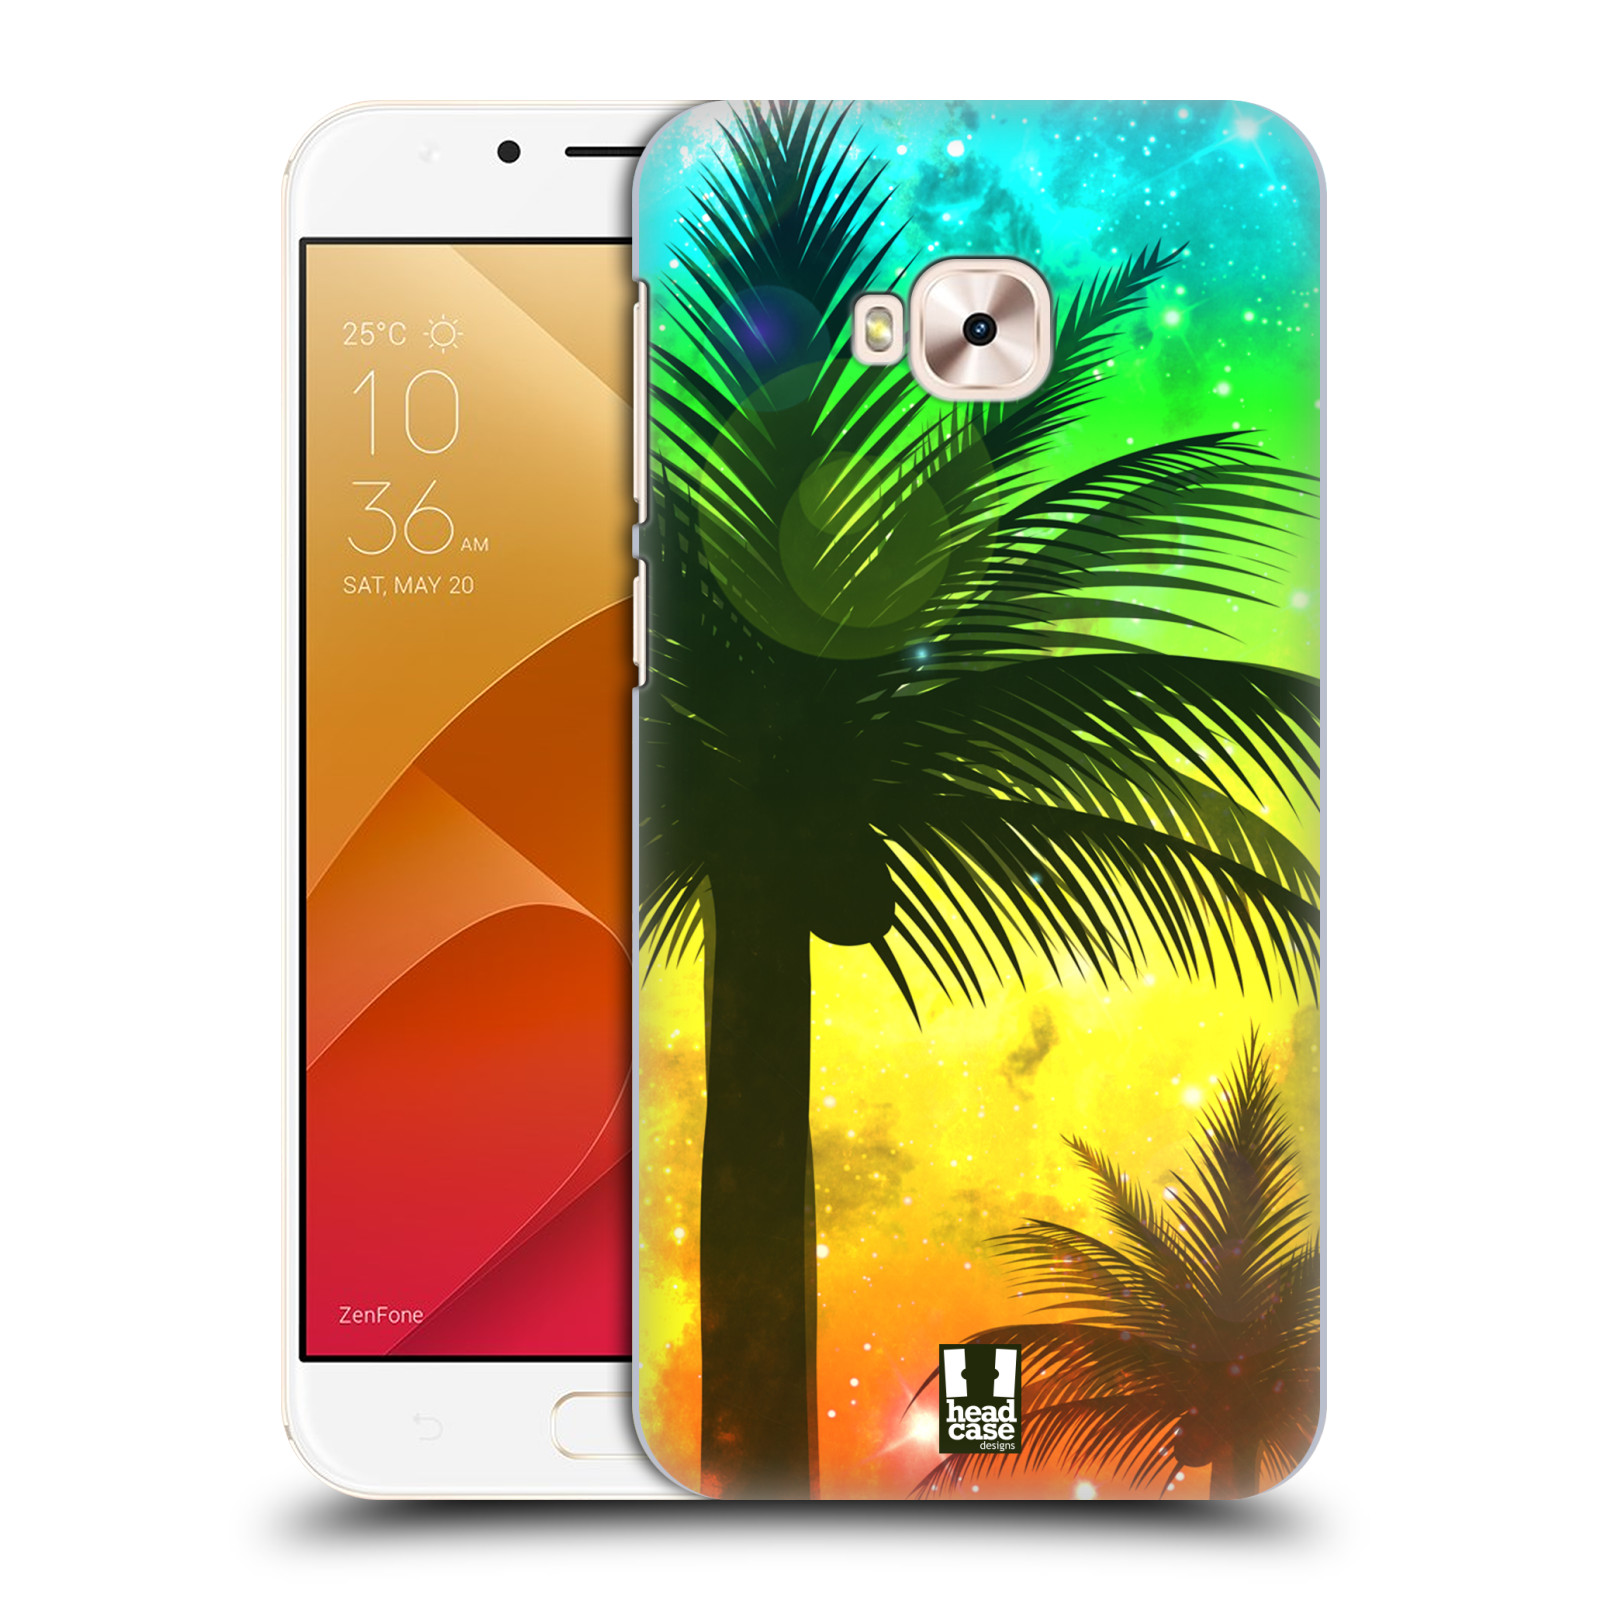 HEAD CASE plastový obal na mobil Asus Zenfone 4 Selfie Pro ZD552KL vzor Kreslený motiv silueta moře a palmy ZELENÁ A ORANŽOVÁ